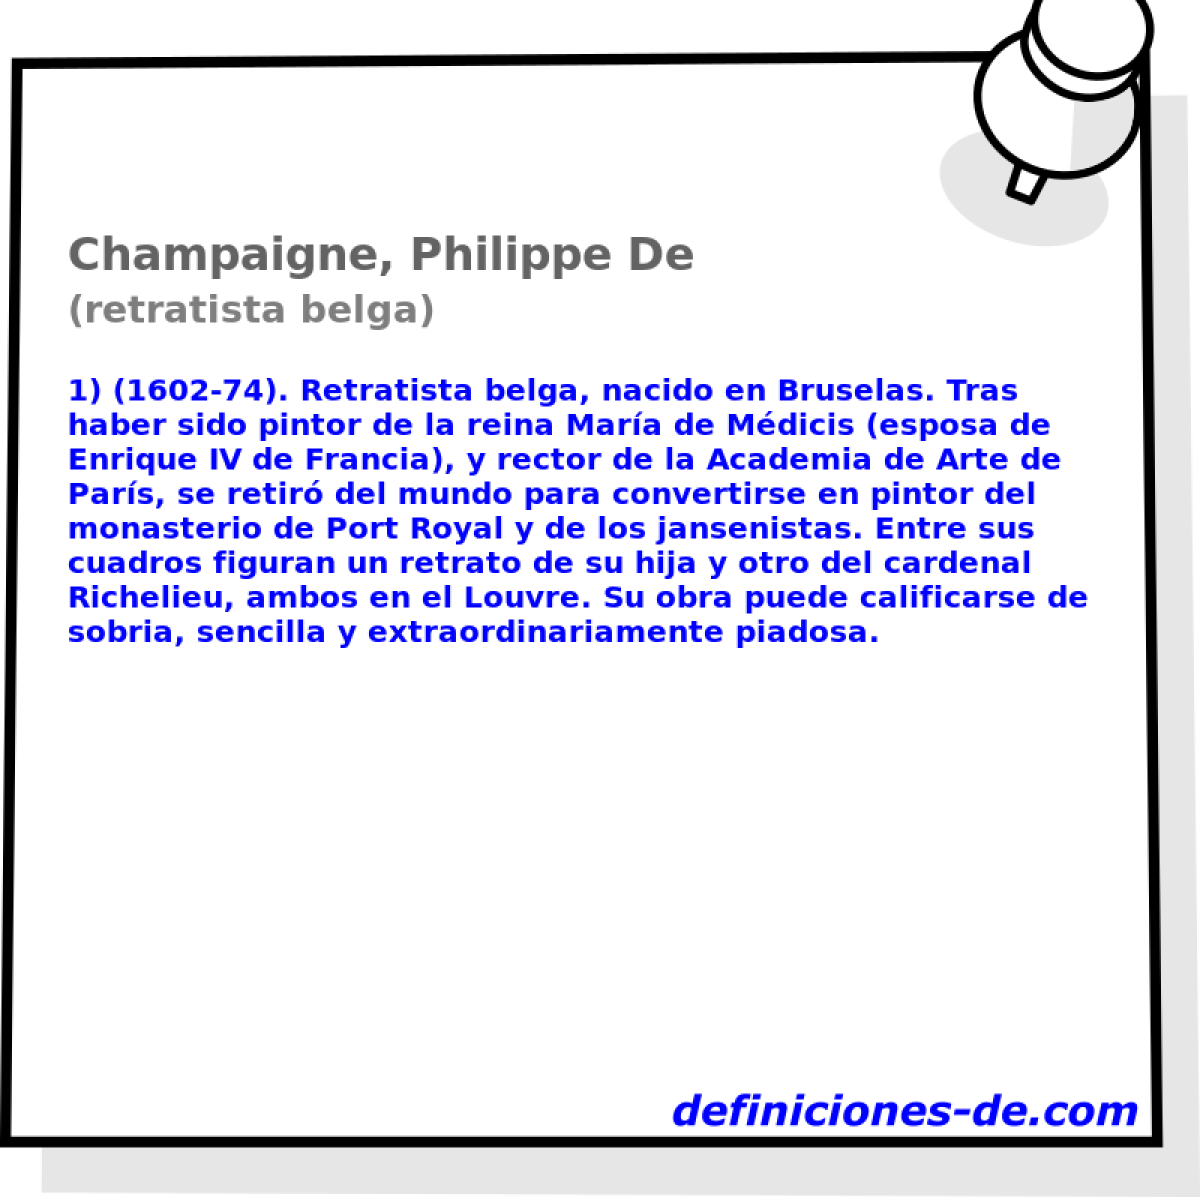 Champaigne, Philippe De (retratista belga)